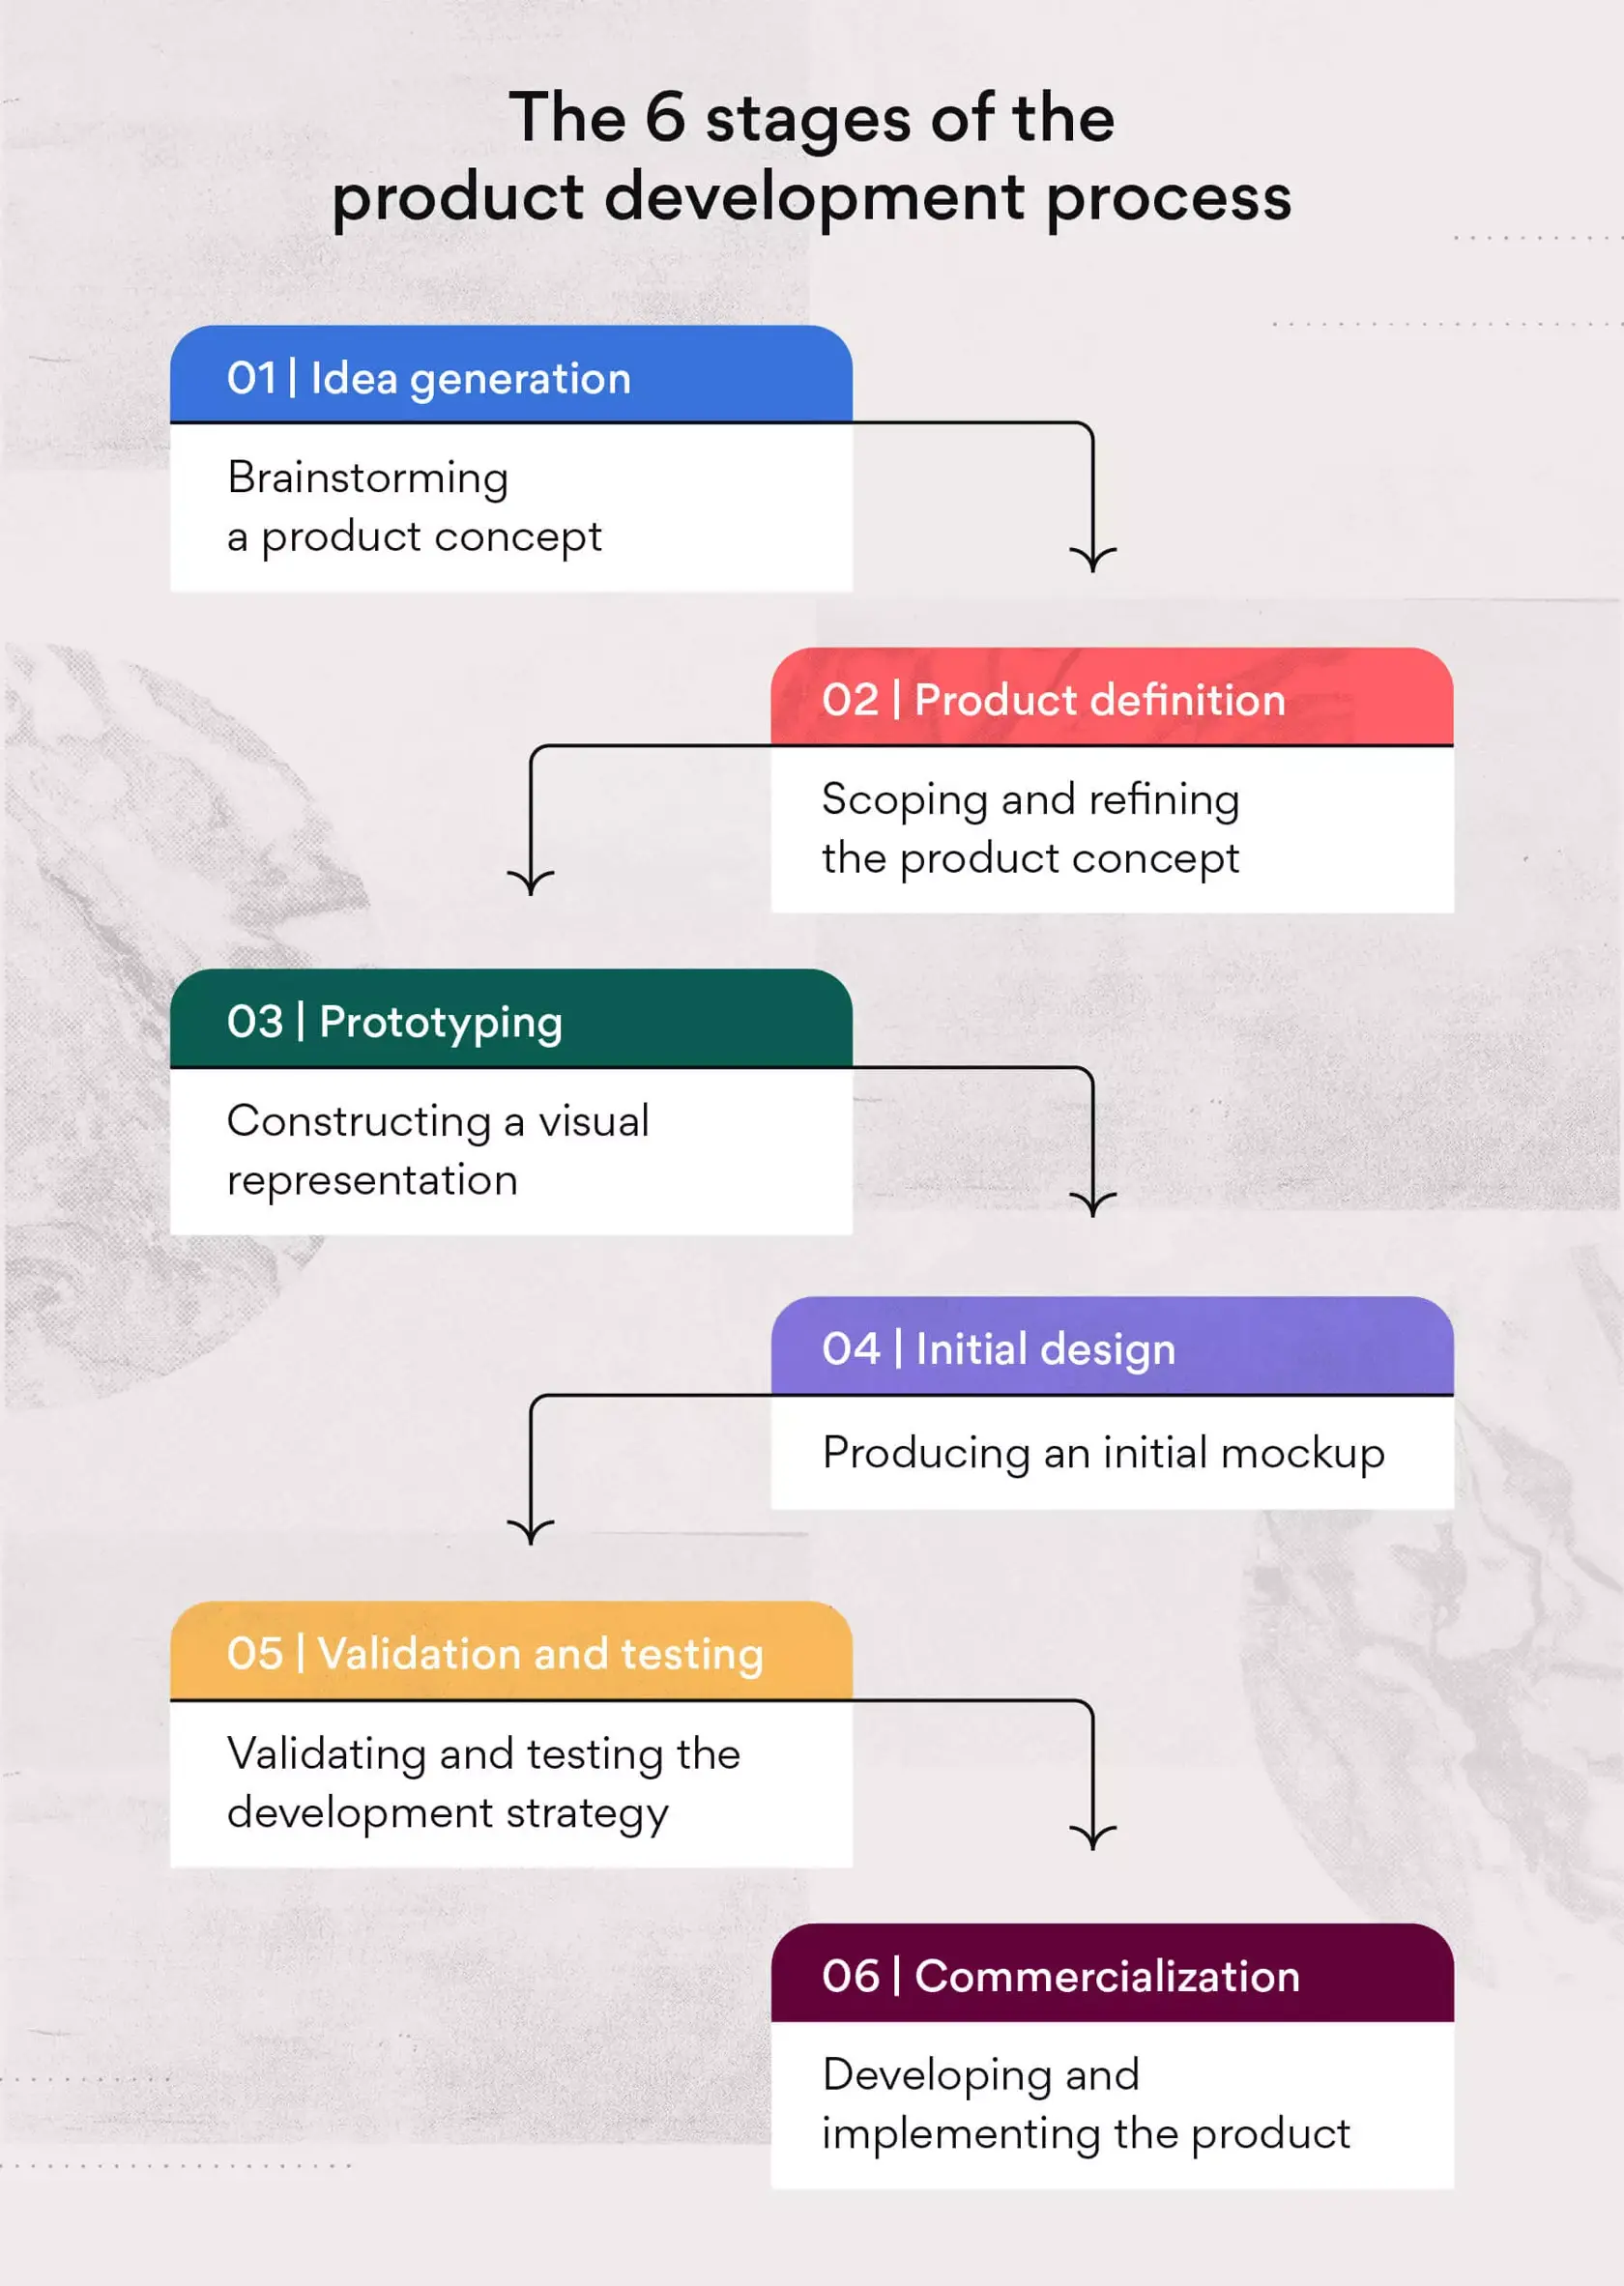 Le sei fasi del processo di sviluppo del prodotto